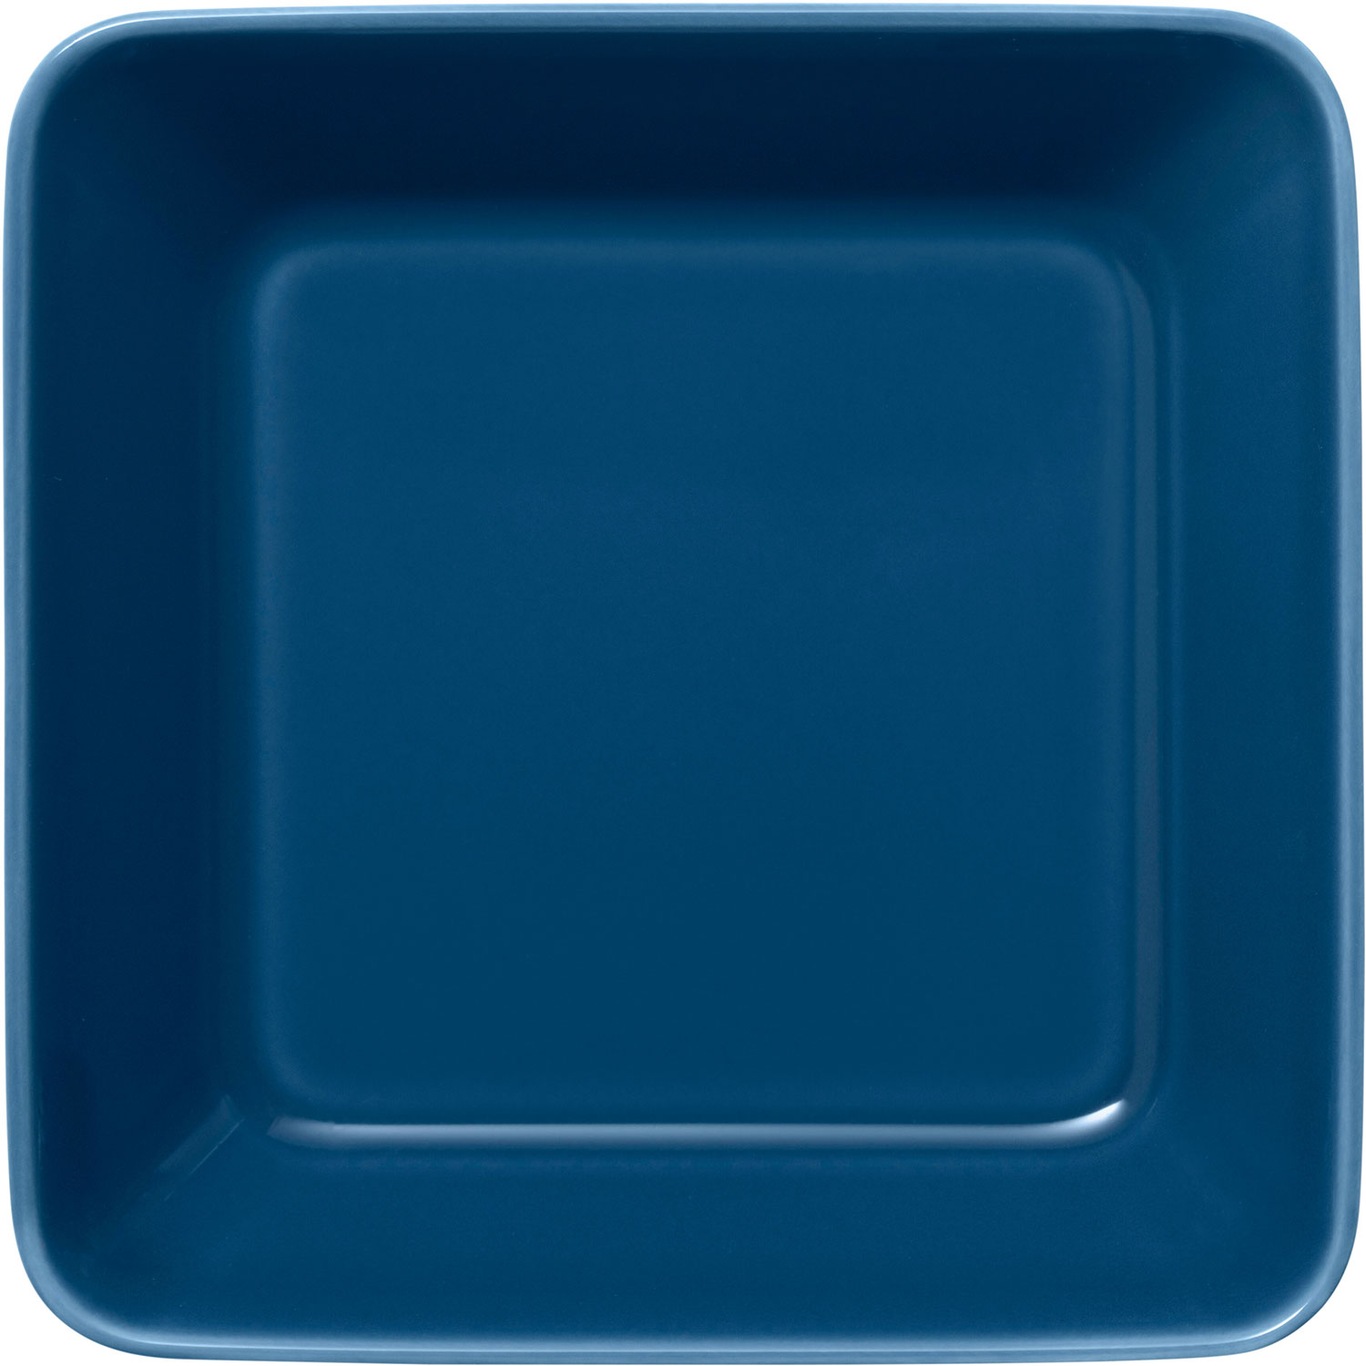 Teema Plate 16x16cm Vintage Blue